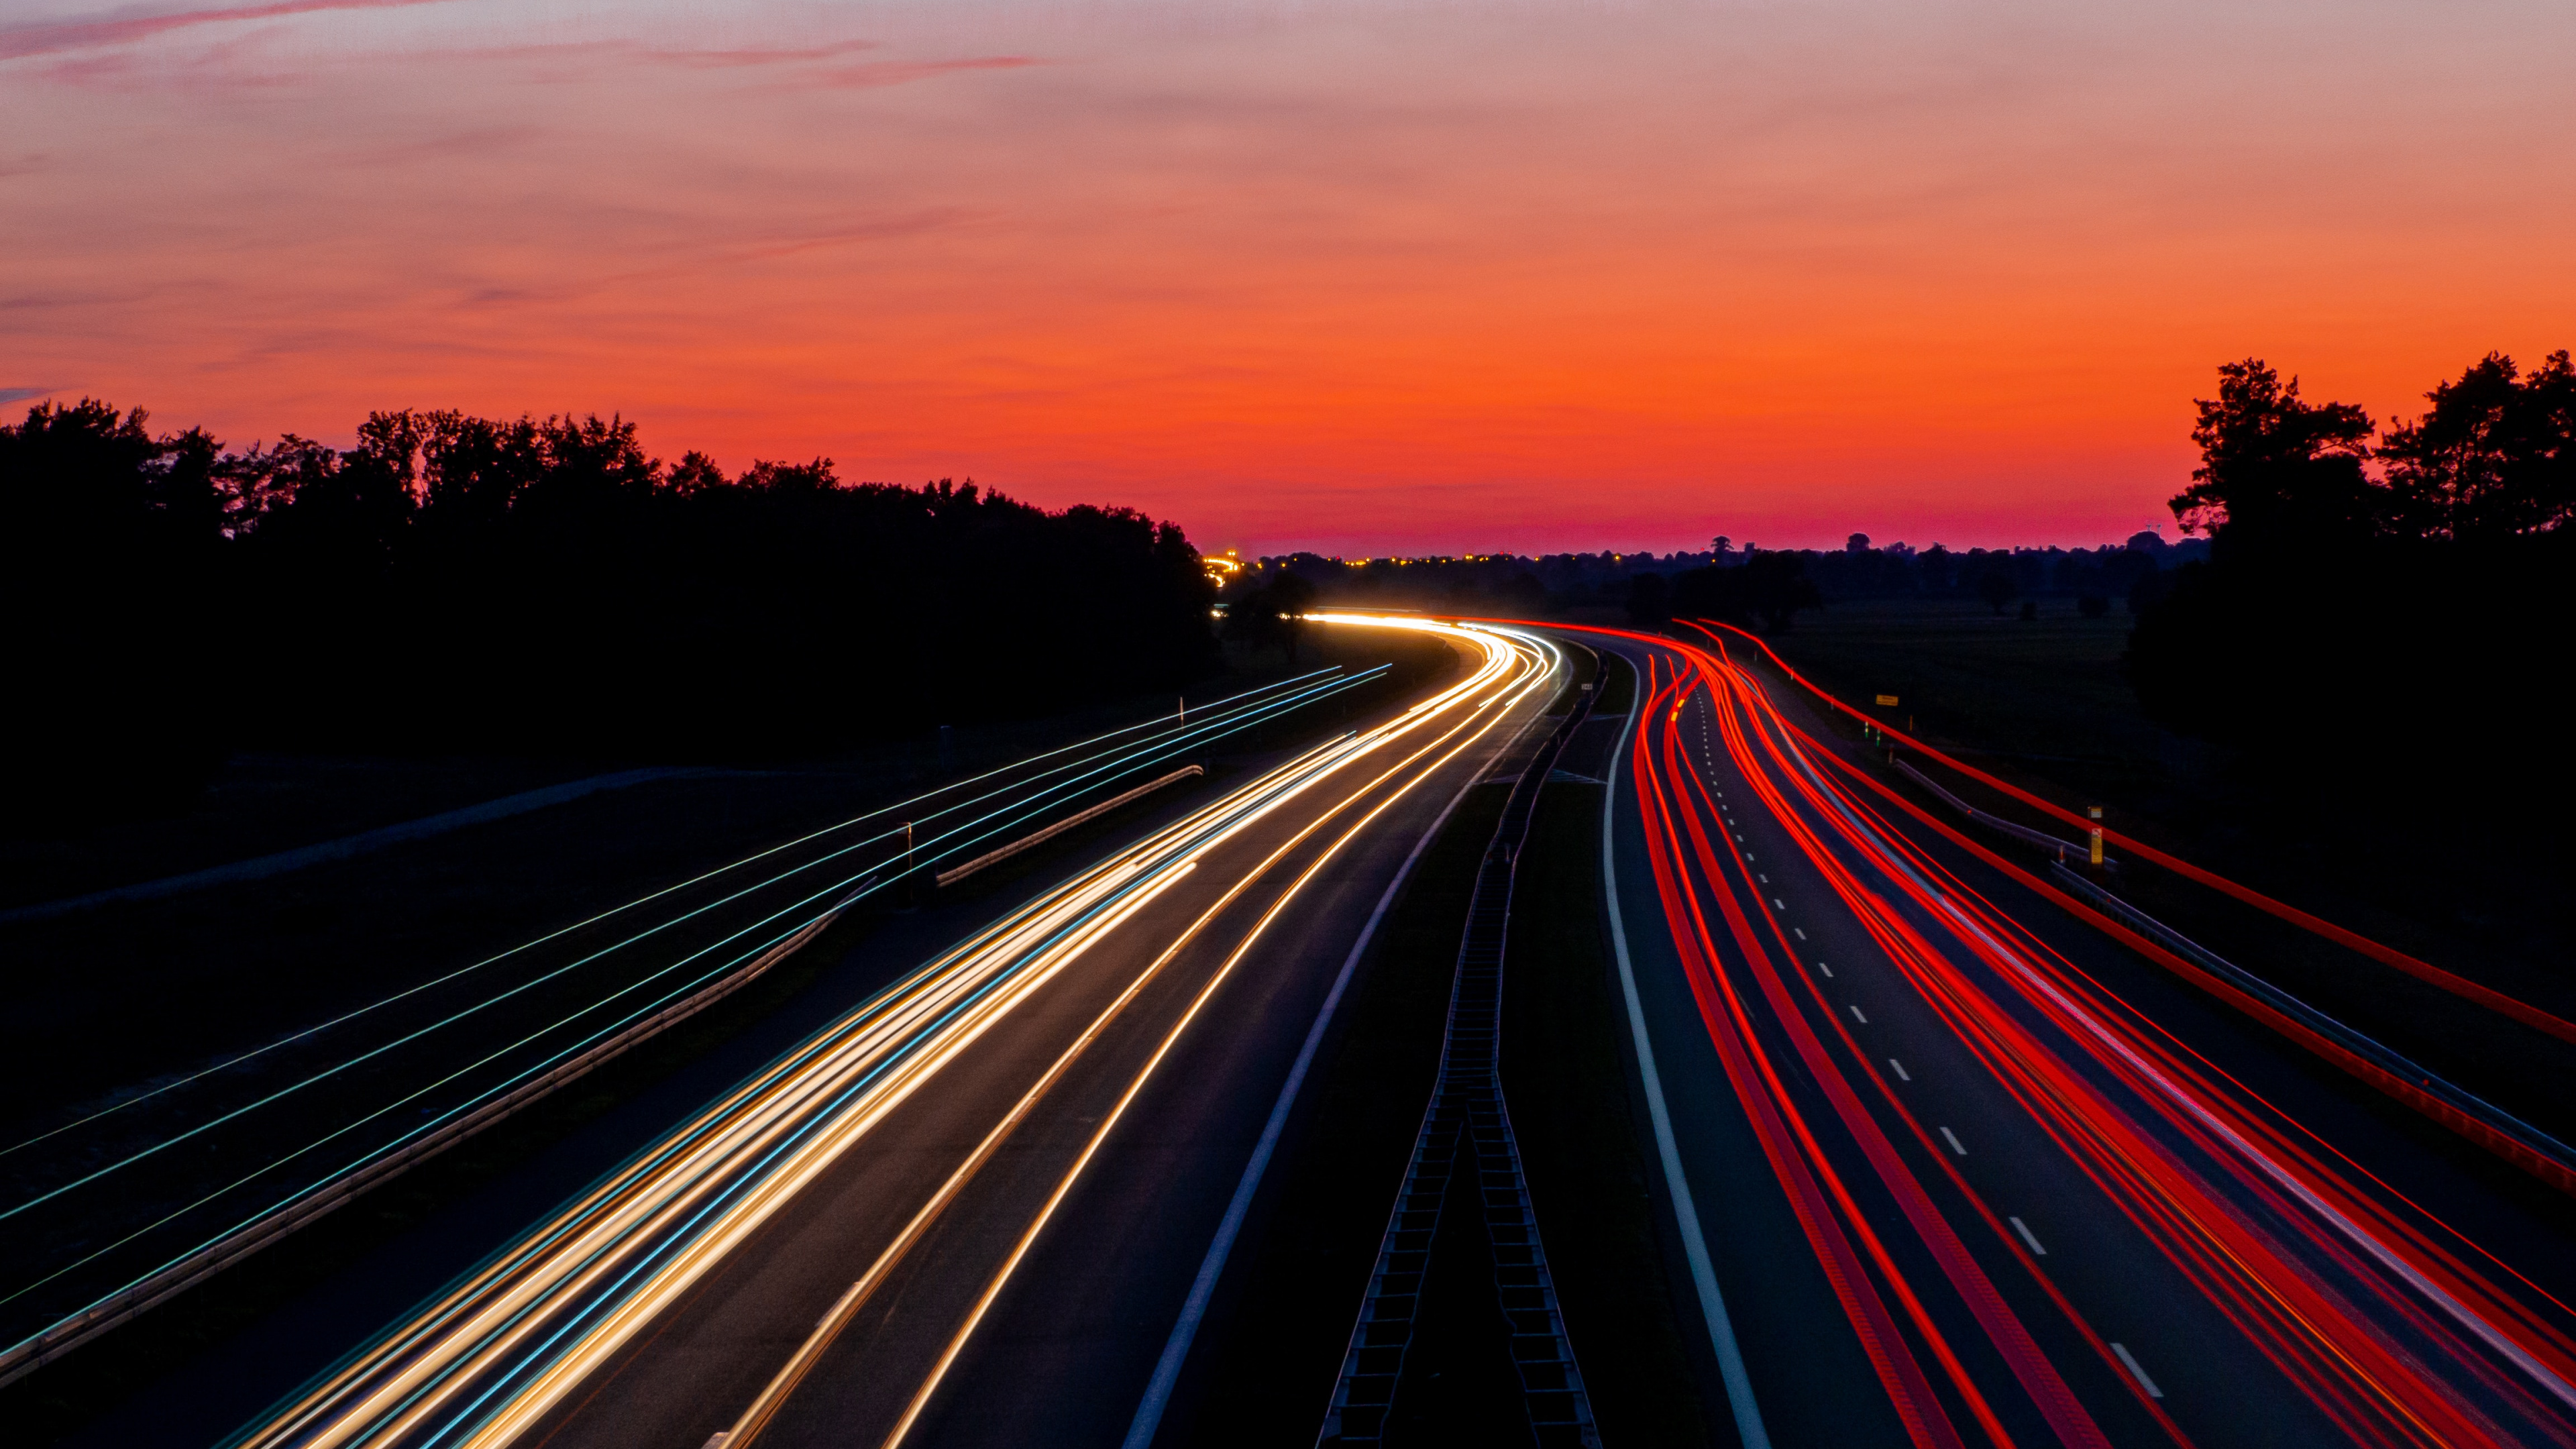 高速公路, 红色的, 地平线, 光, 晚上 壁纸 3840x2160 允许